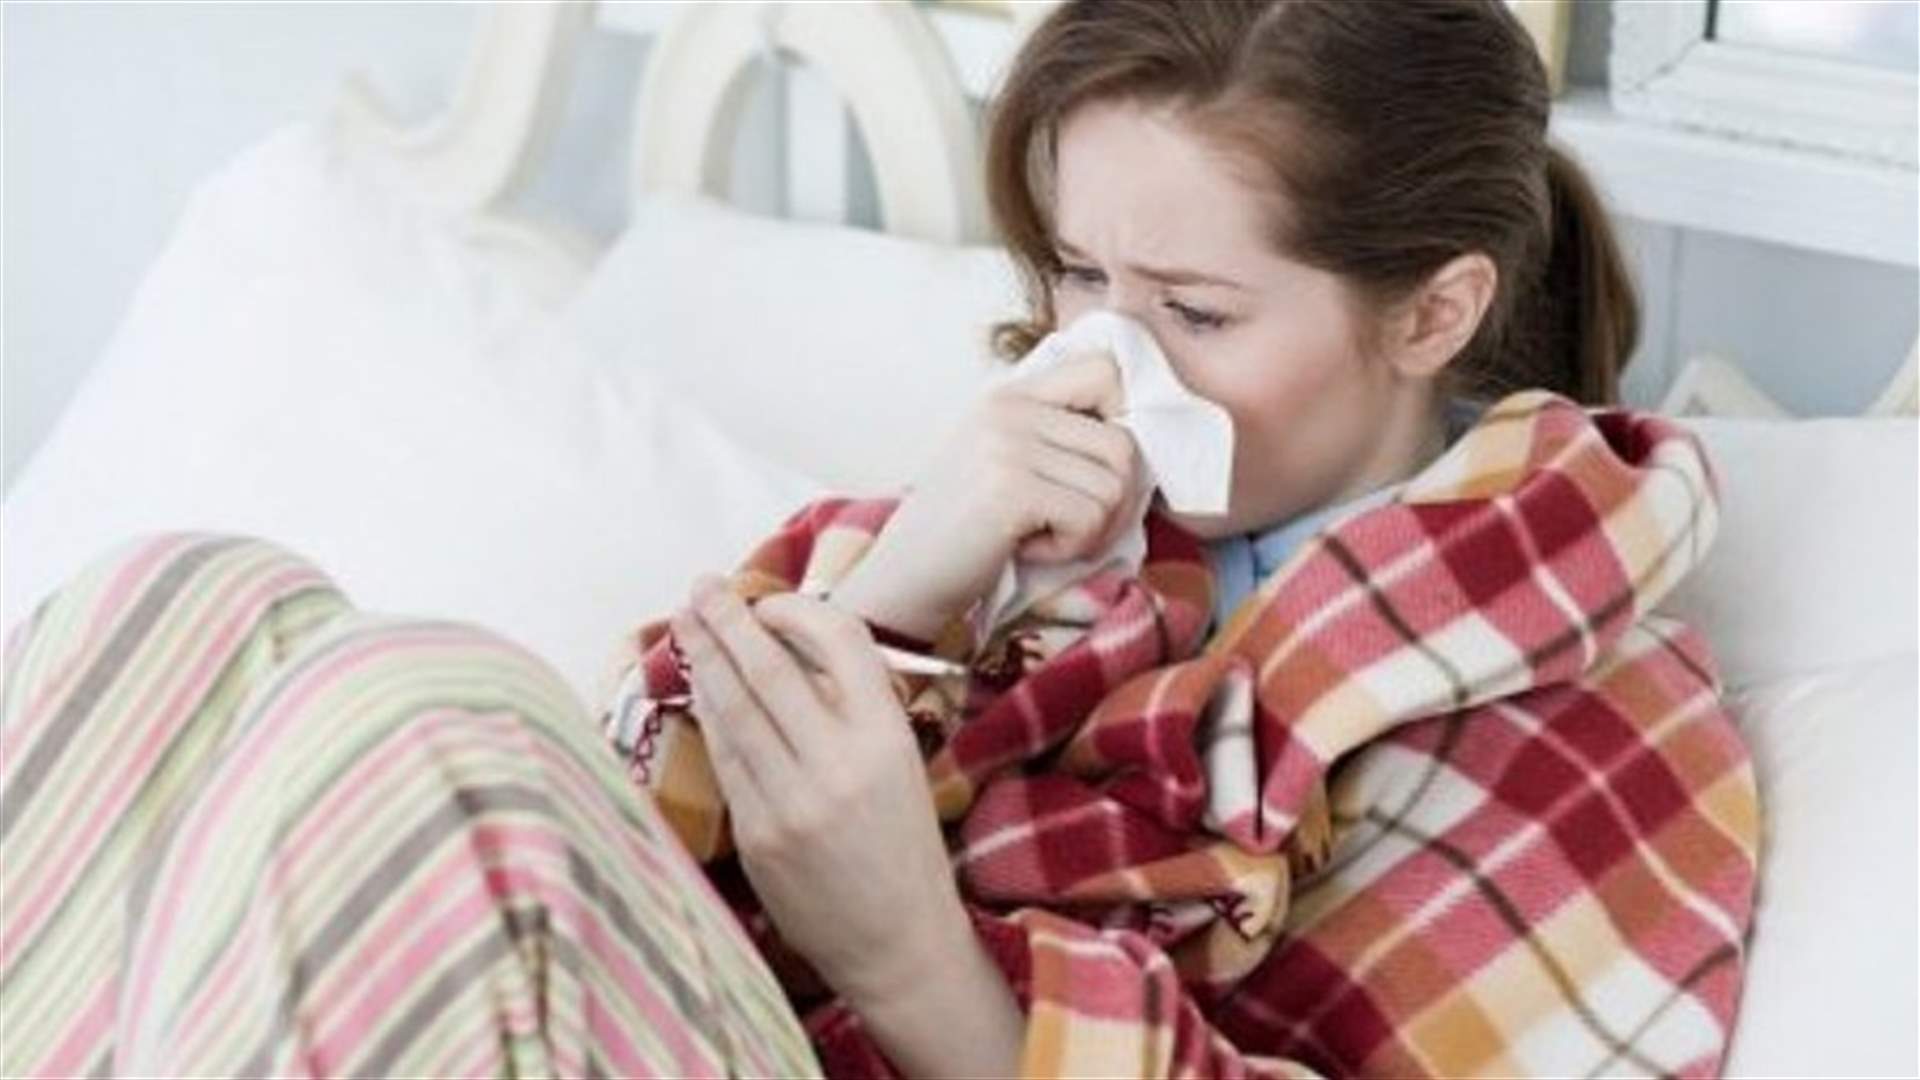 شاي قويّ للوقاية من الإنفلوانزا في الشتاء